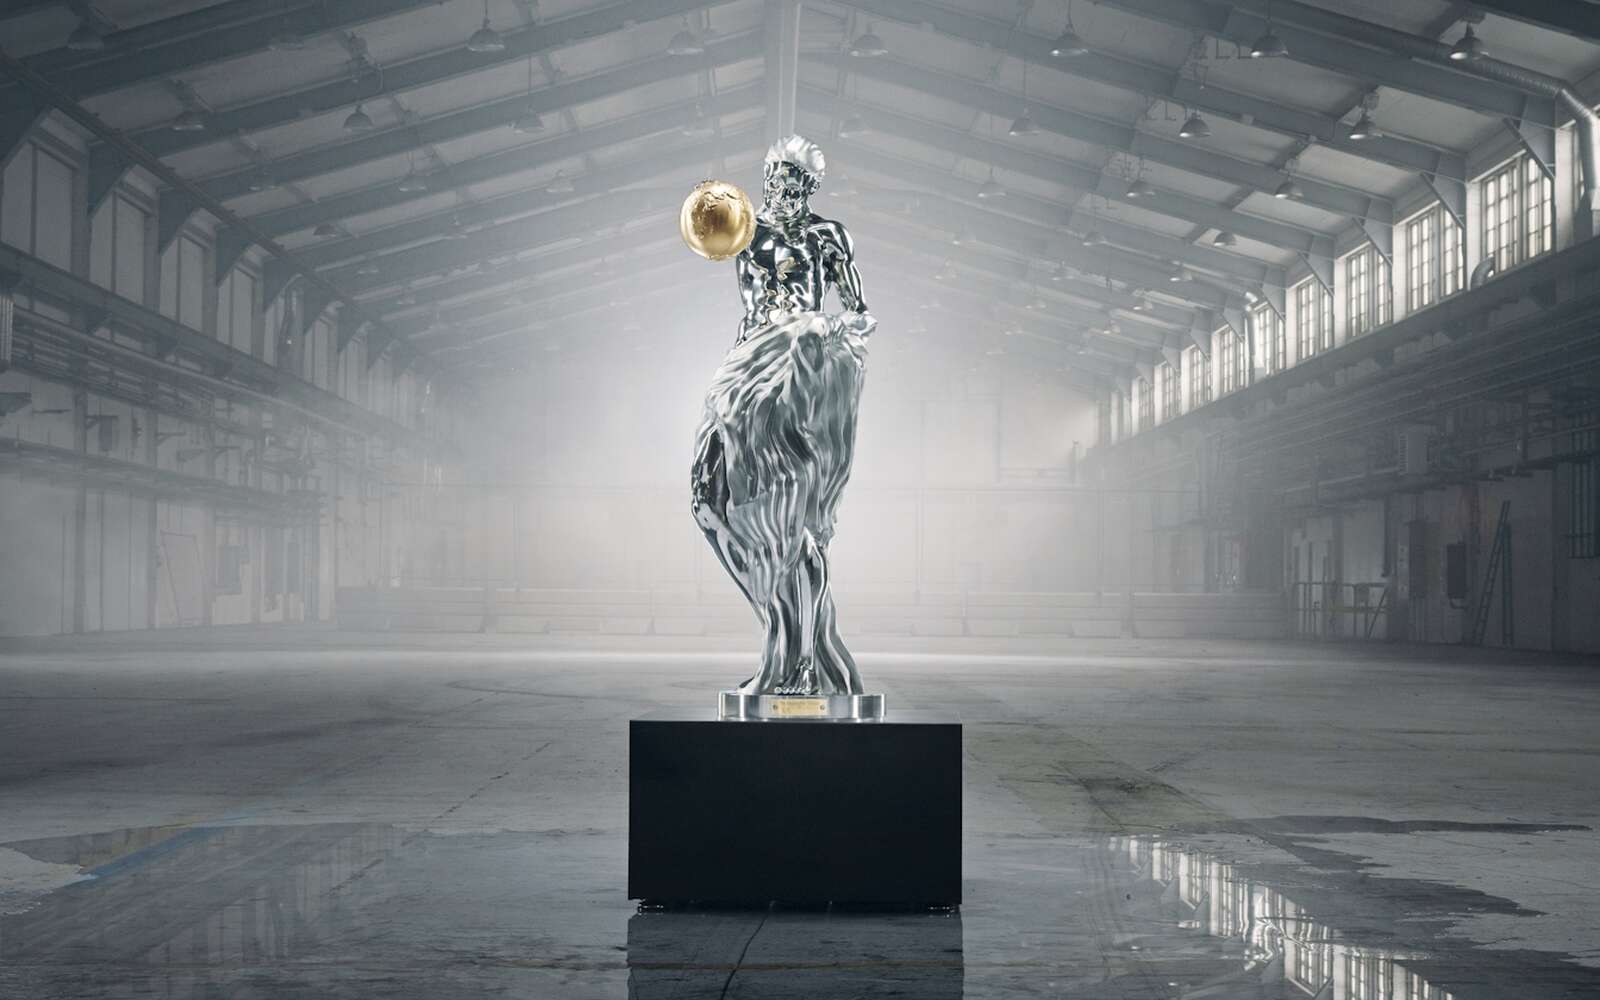 Voici à quoi ressemblerait une sculpture réalisée par Michel-Ange, Rodin et 3 autres maîtres